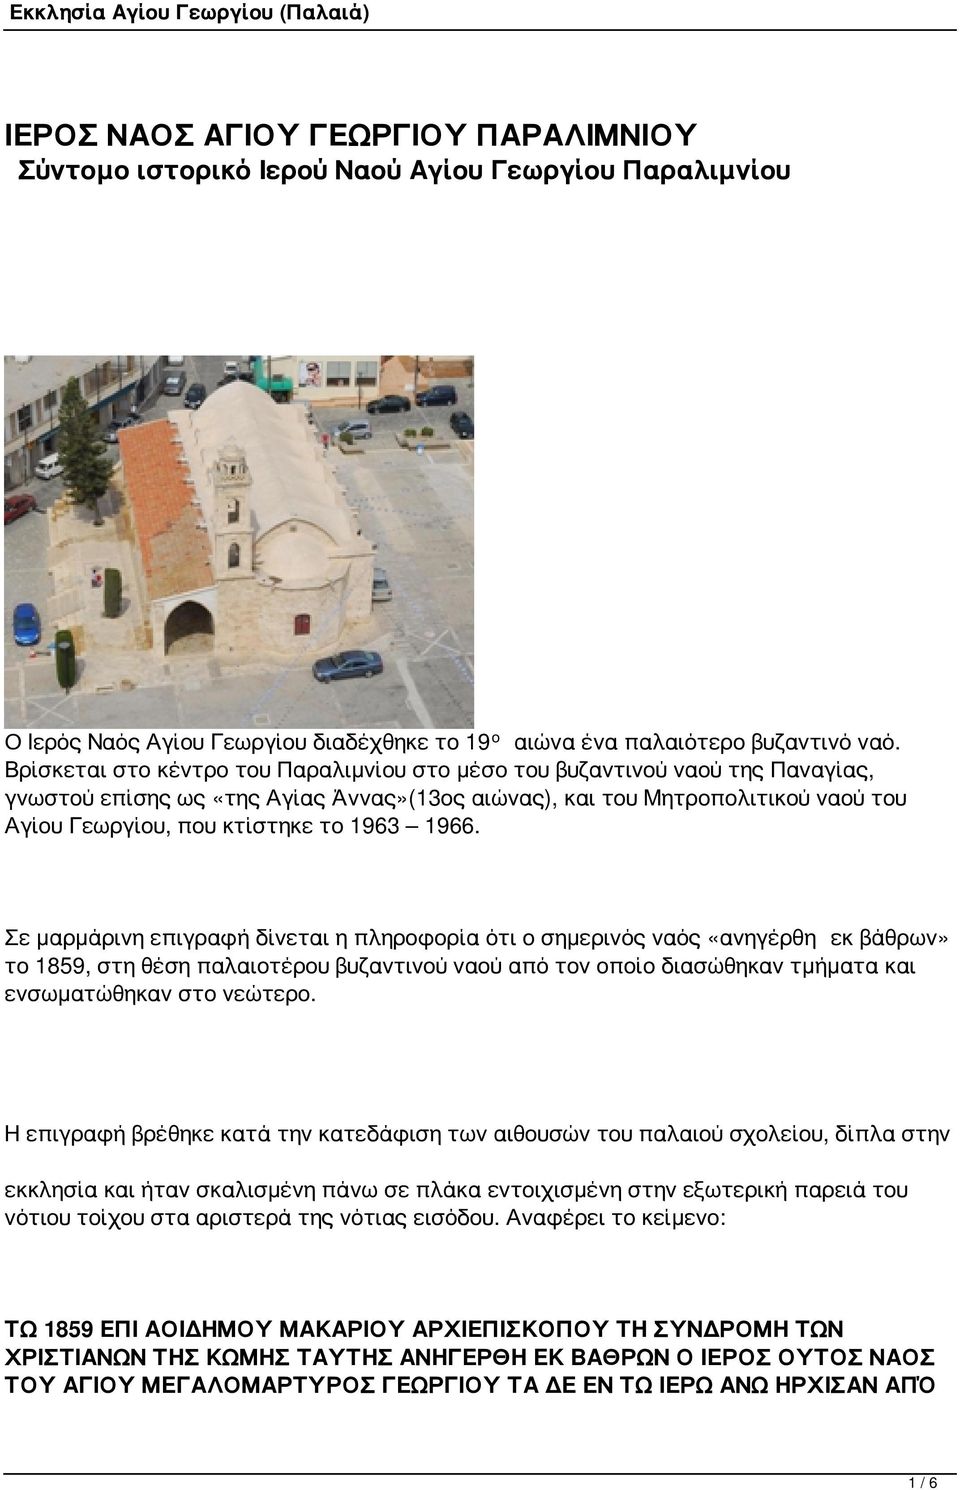 1966. Σε μαρμάρινη επιγραφή δίνεται η πληροφορία ότι ο σημερινός ναός «ανηγέρθη εκ βάθρων» το 1859, στη θέση παλαιοτέρου βυζαντινού ναού από τον οποίο διασώθηκαν τμήματα και ενσωματώθηκαν στο νεώτερο.